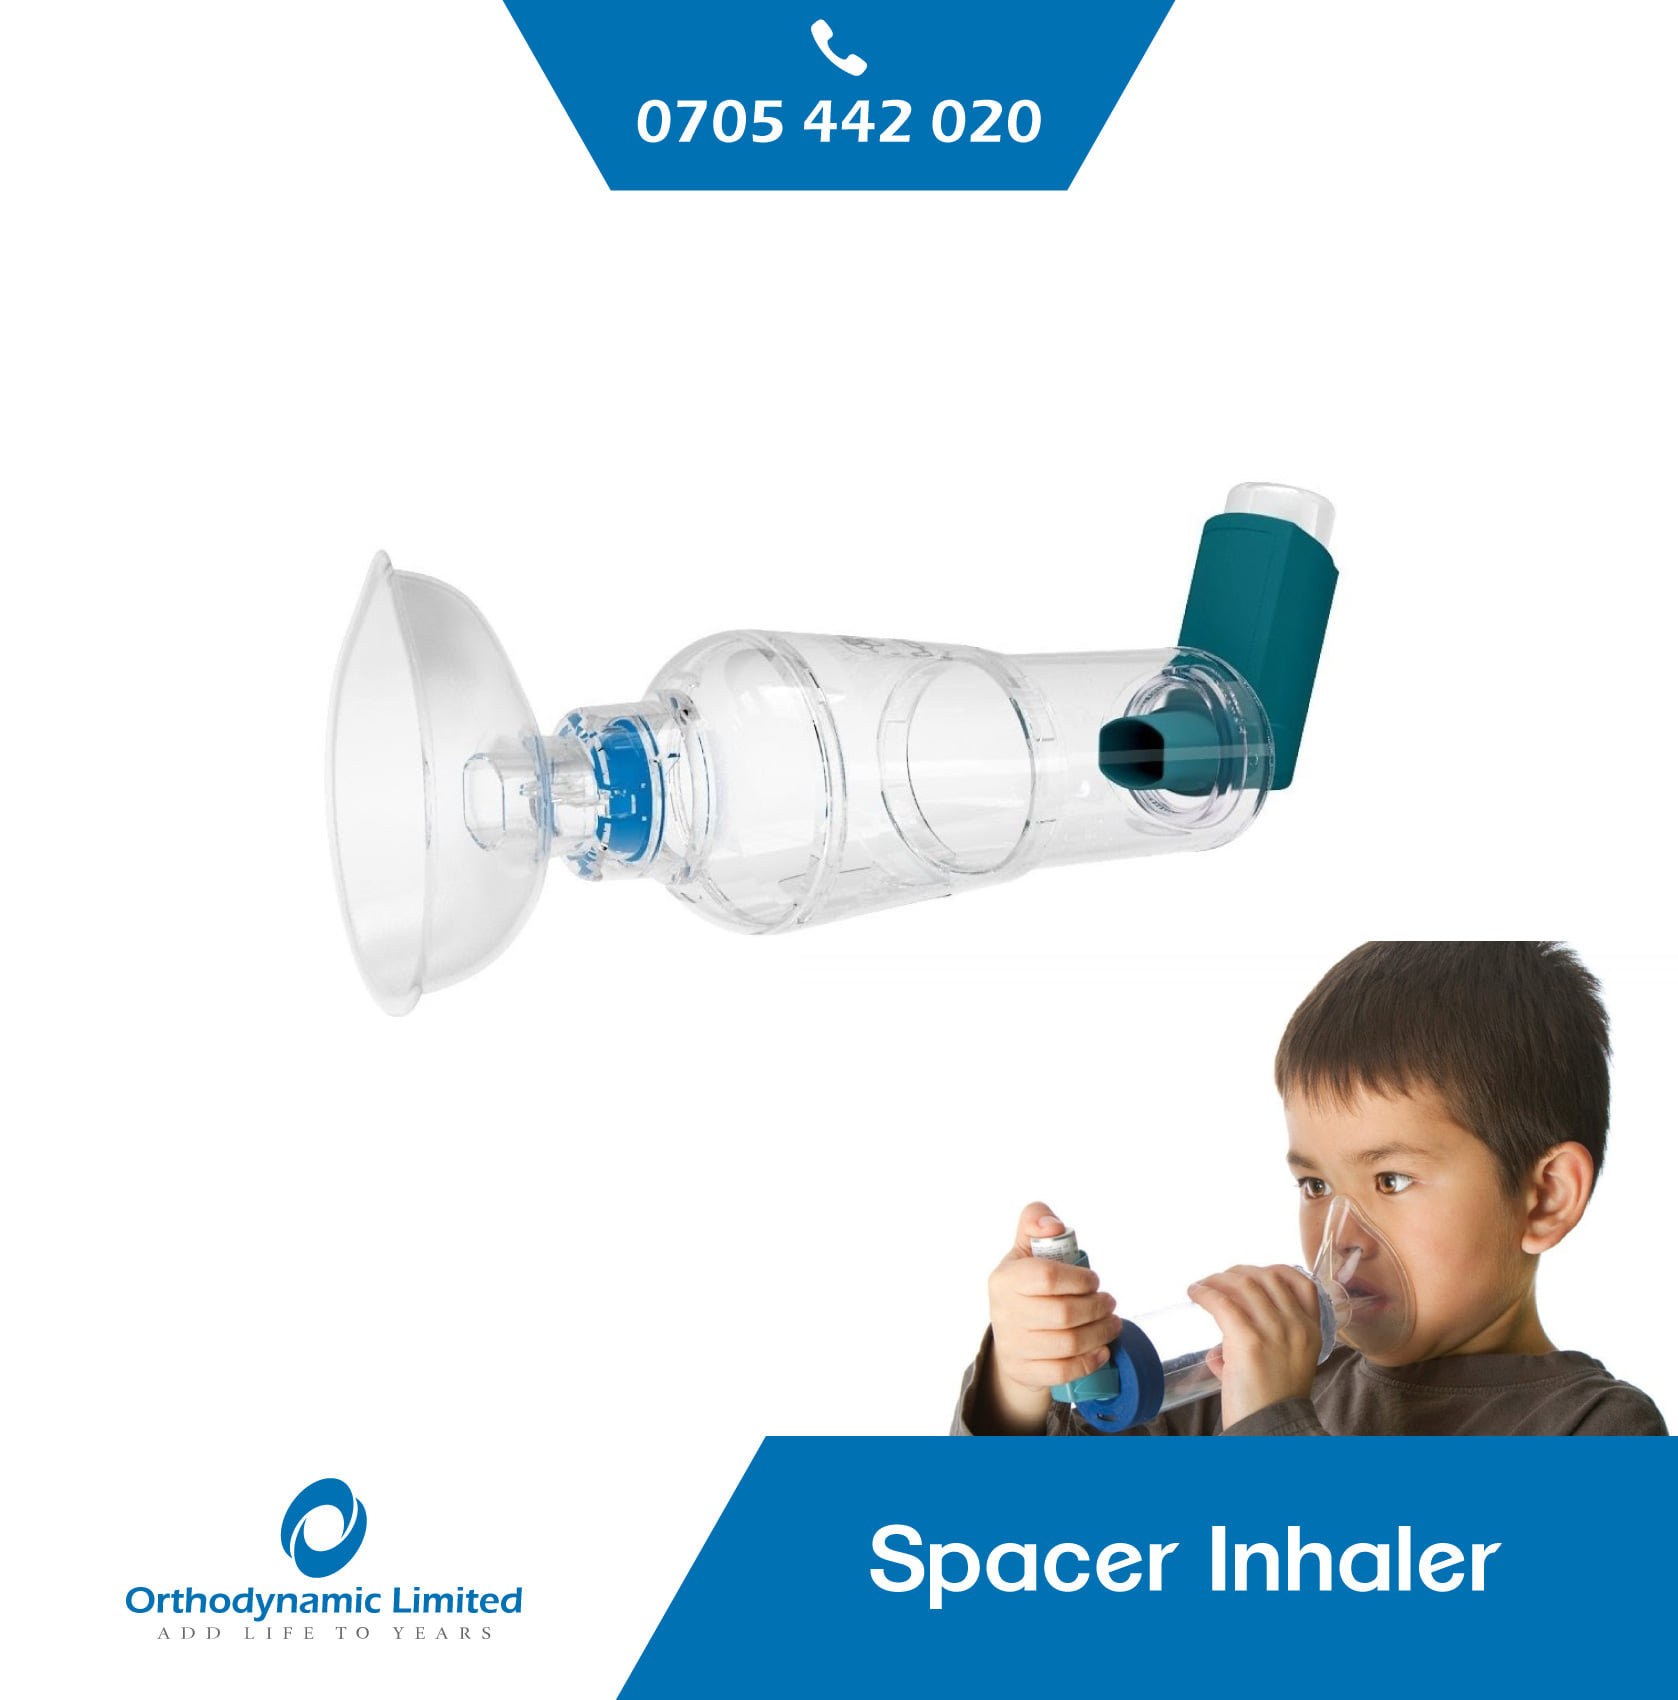 Spacer inhaler